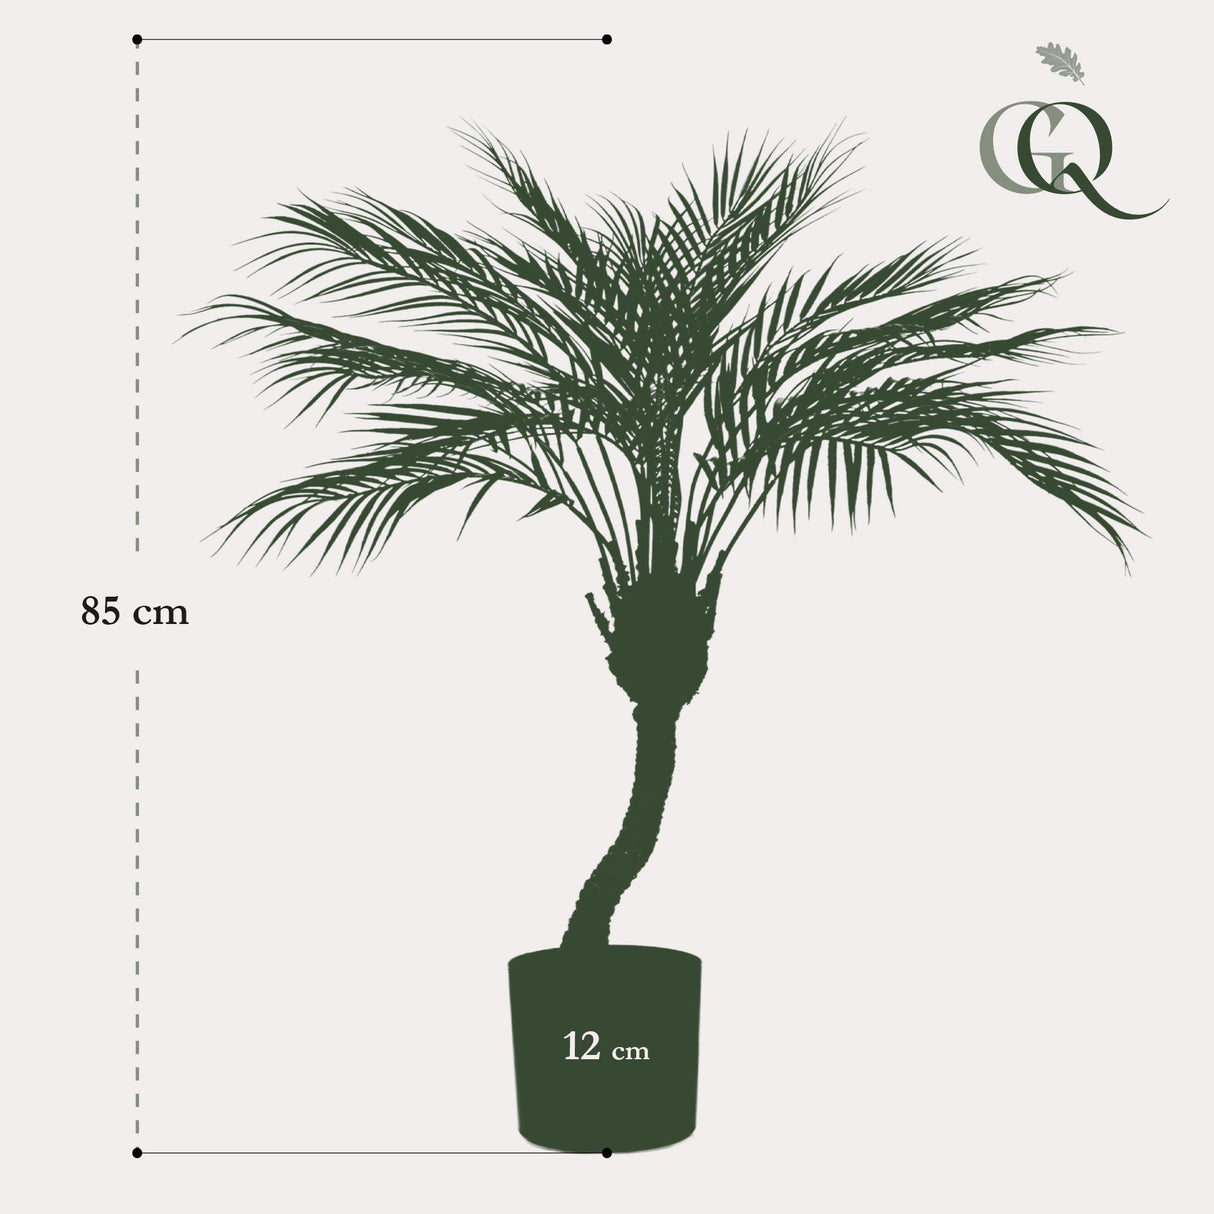 Chamaedorea plante artificielle - h85cm, Ø12cm